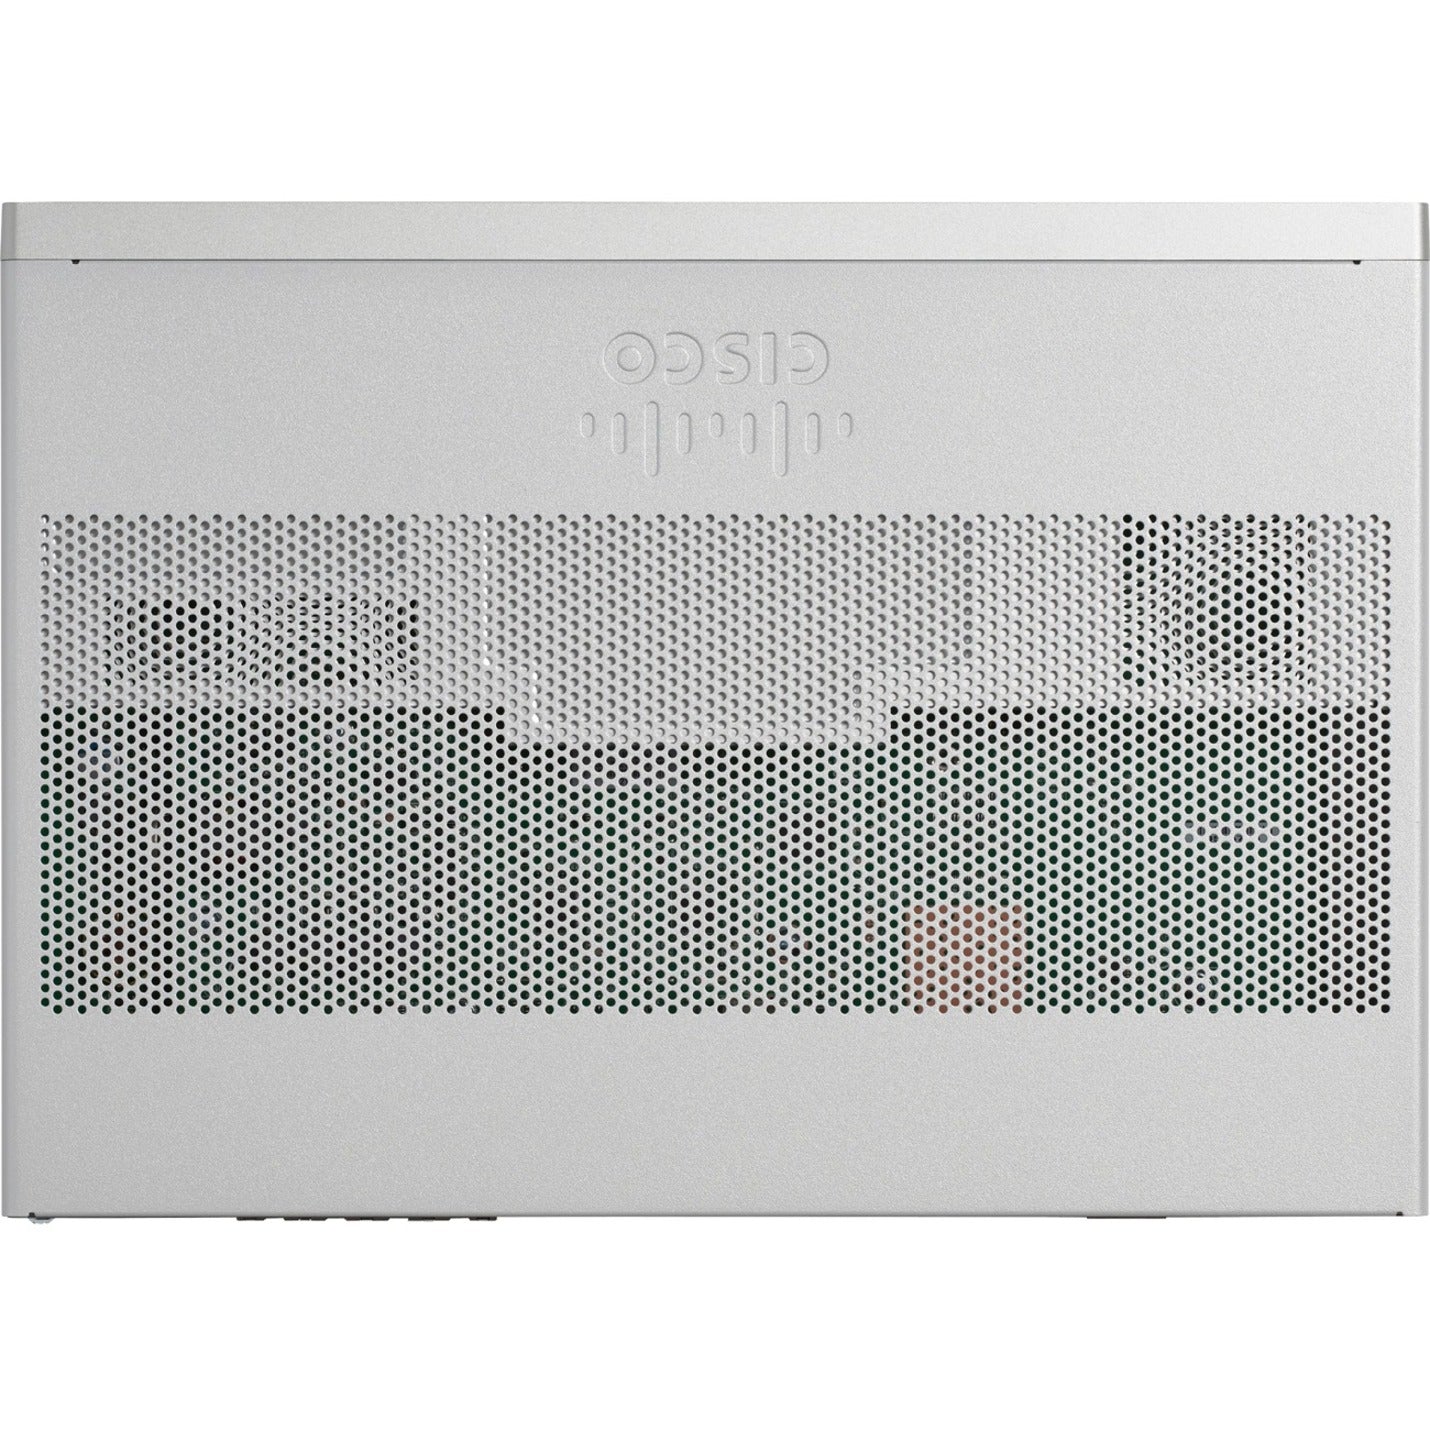 Cisco C1118-8P Router